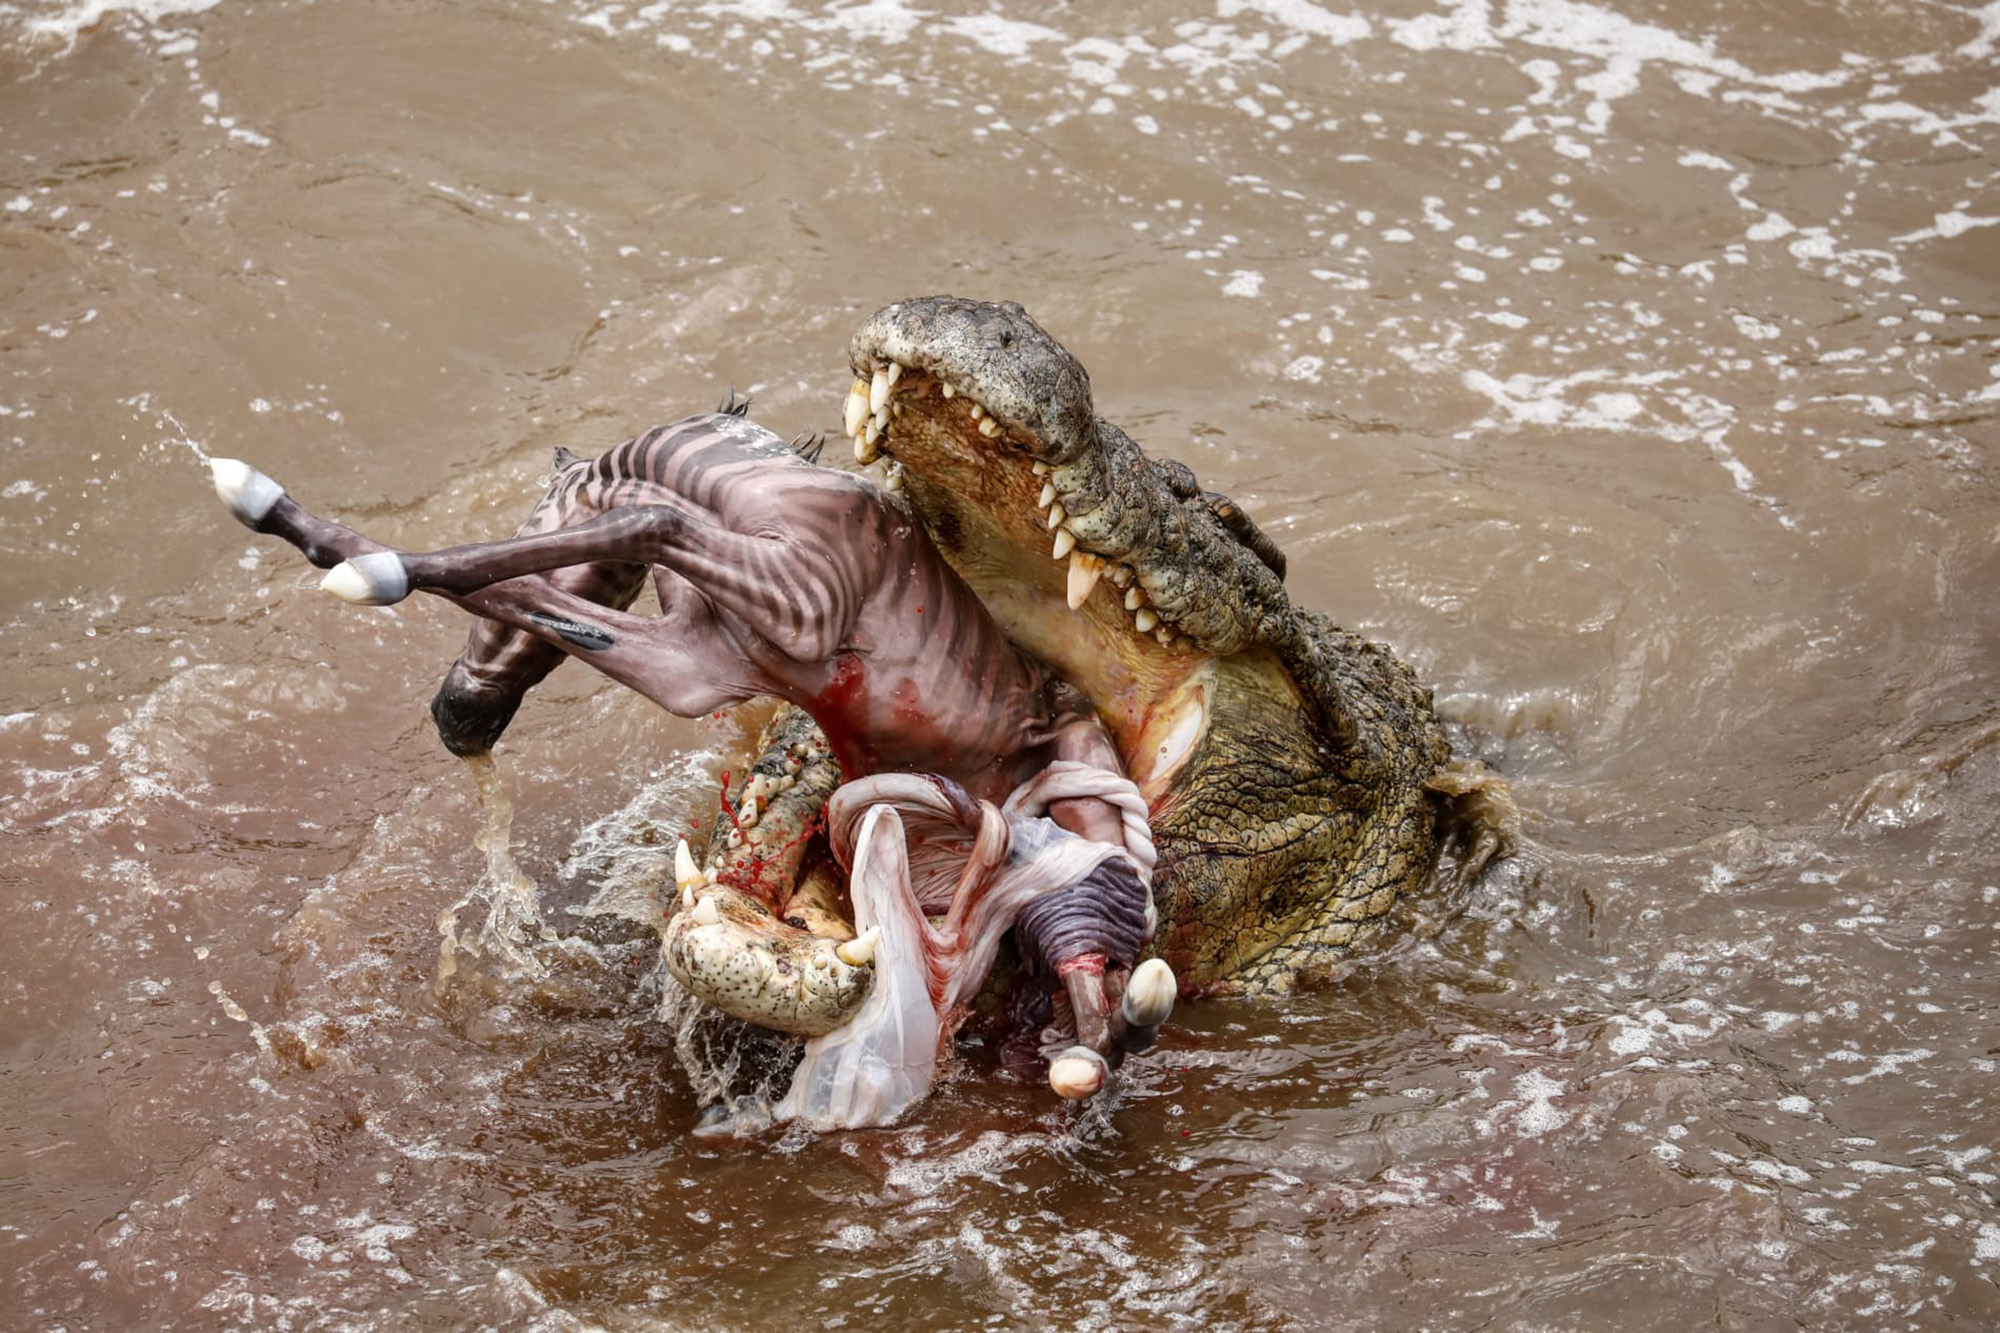 Nile crocodile eats zebra